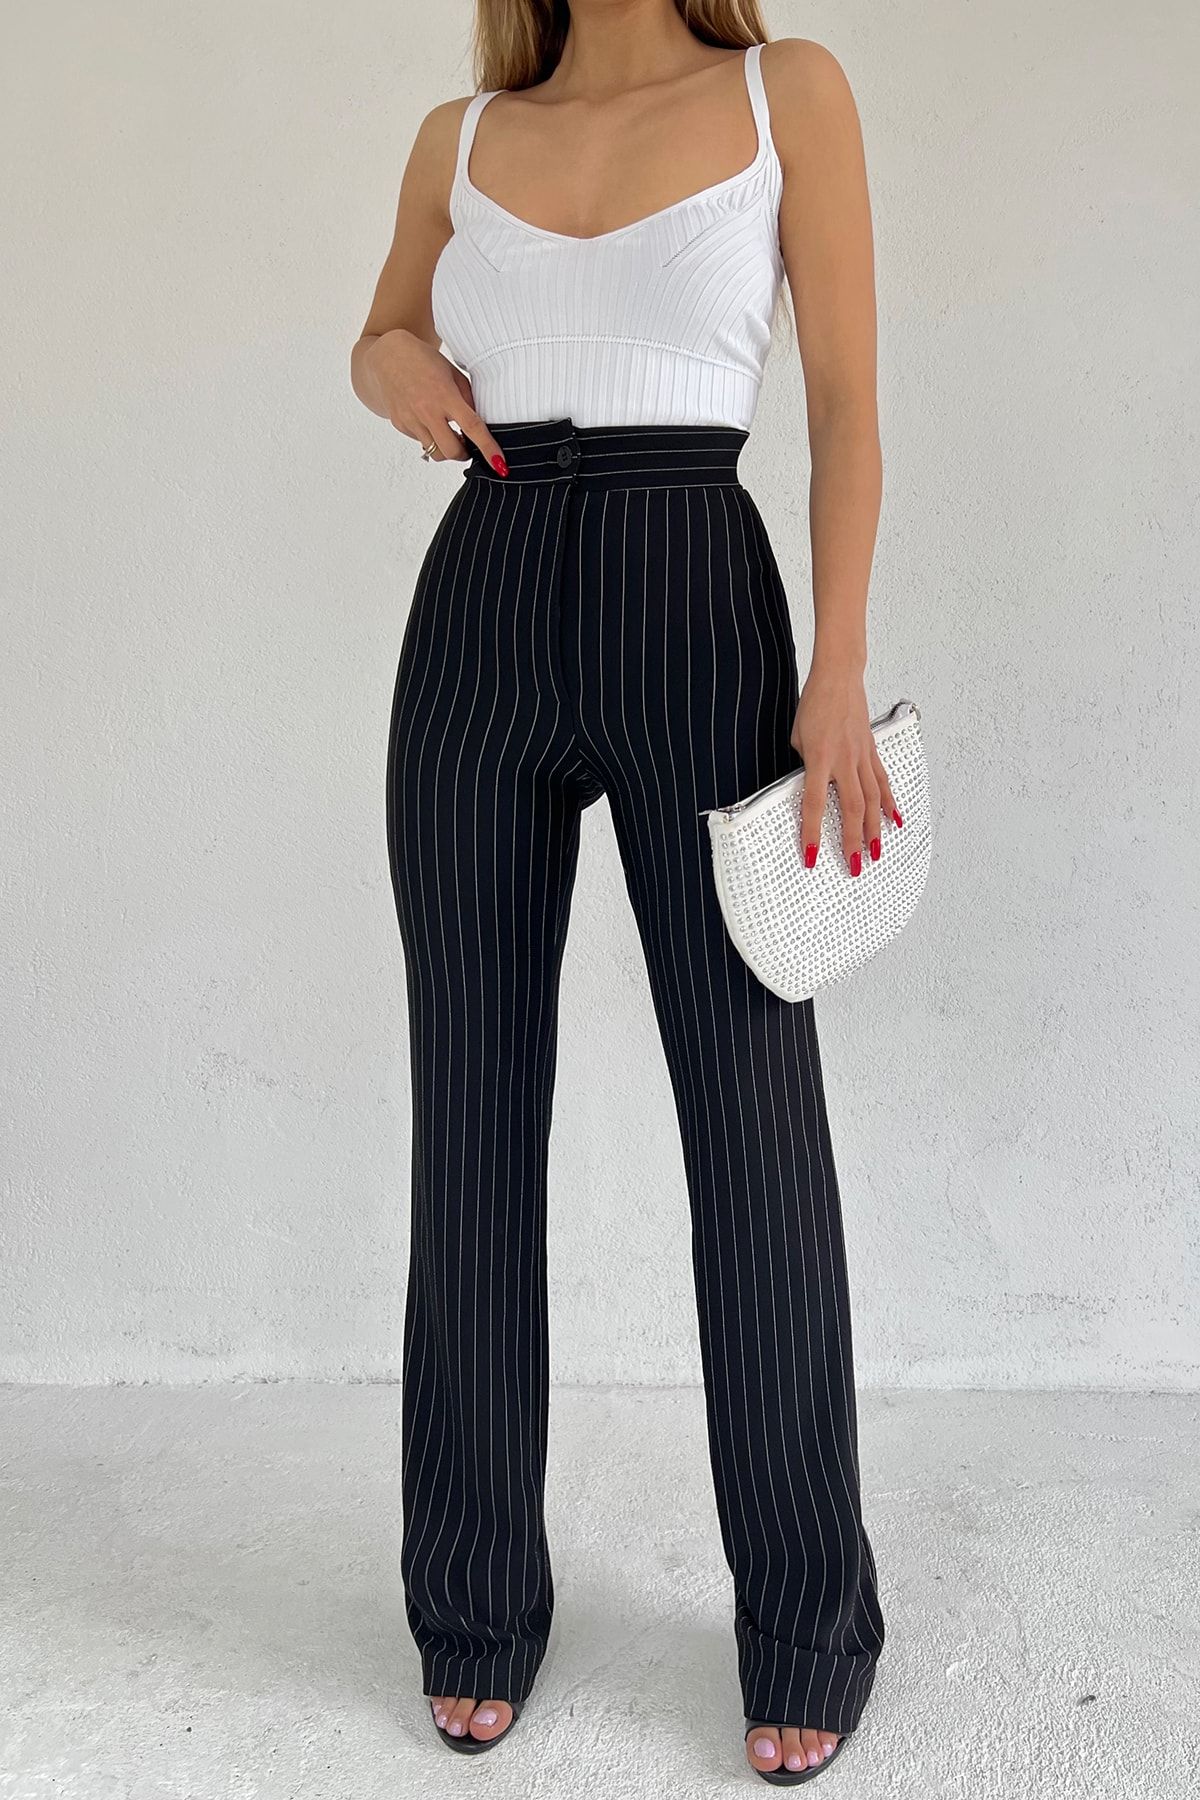 LE CARAMBOLE Kadın Siyah Beyaz Çizgili Önü Çıma Dikişli Düğmeli Fermuarlı Likralı Esnek Tayt Pantolon